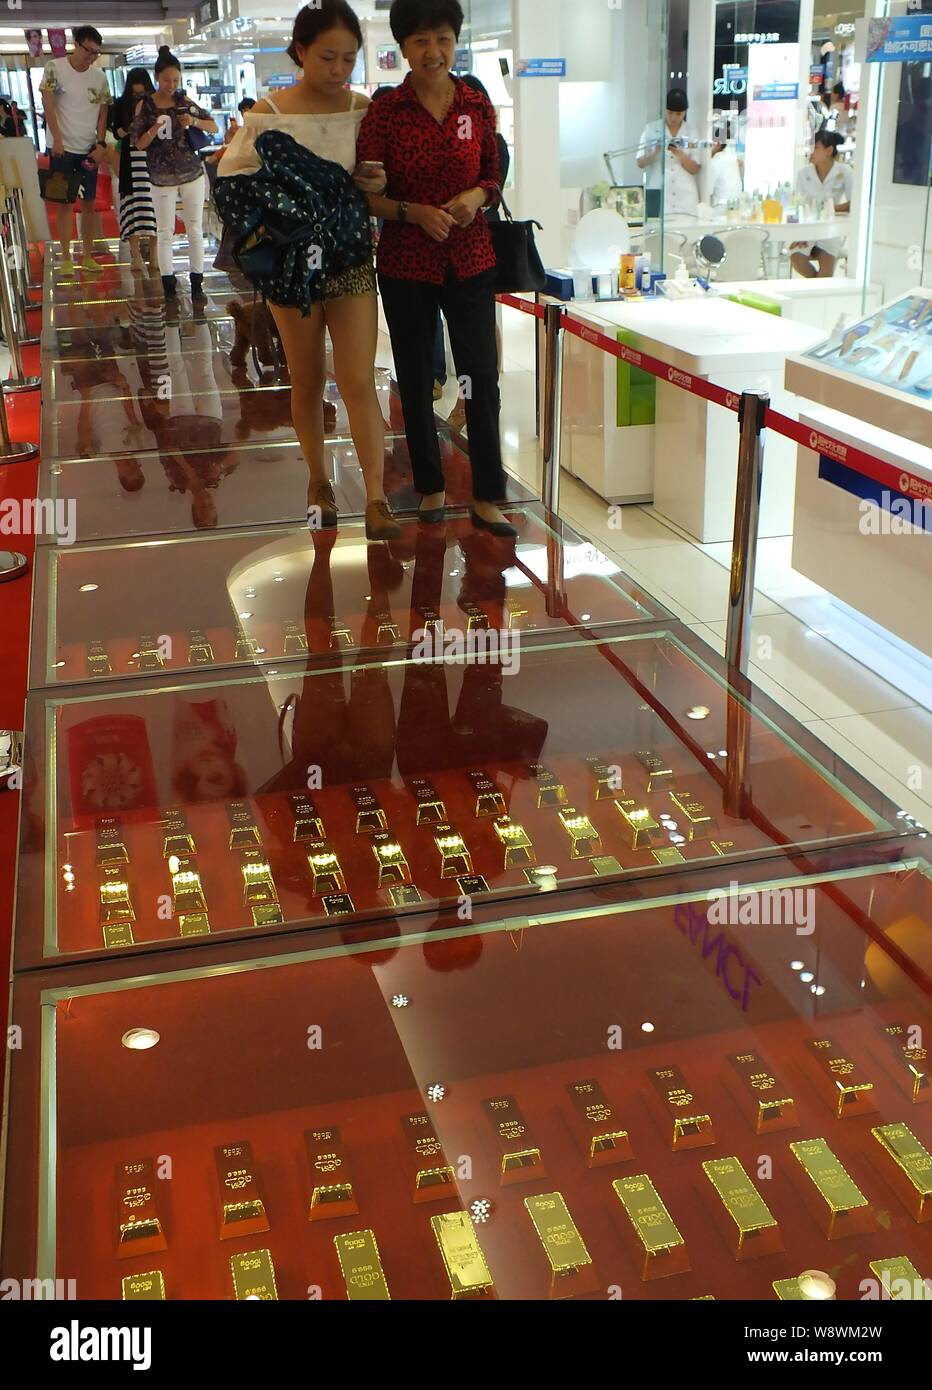 Kunden Spaziergang auf einem Gehweg aus 606 Gold Backsteine bei einem Einkaufszentrum in Yichang City, Central China Provinz Hubei, 21. September 2014. Stockfoto